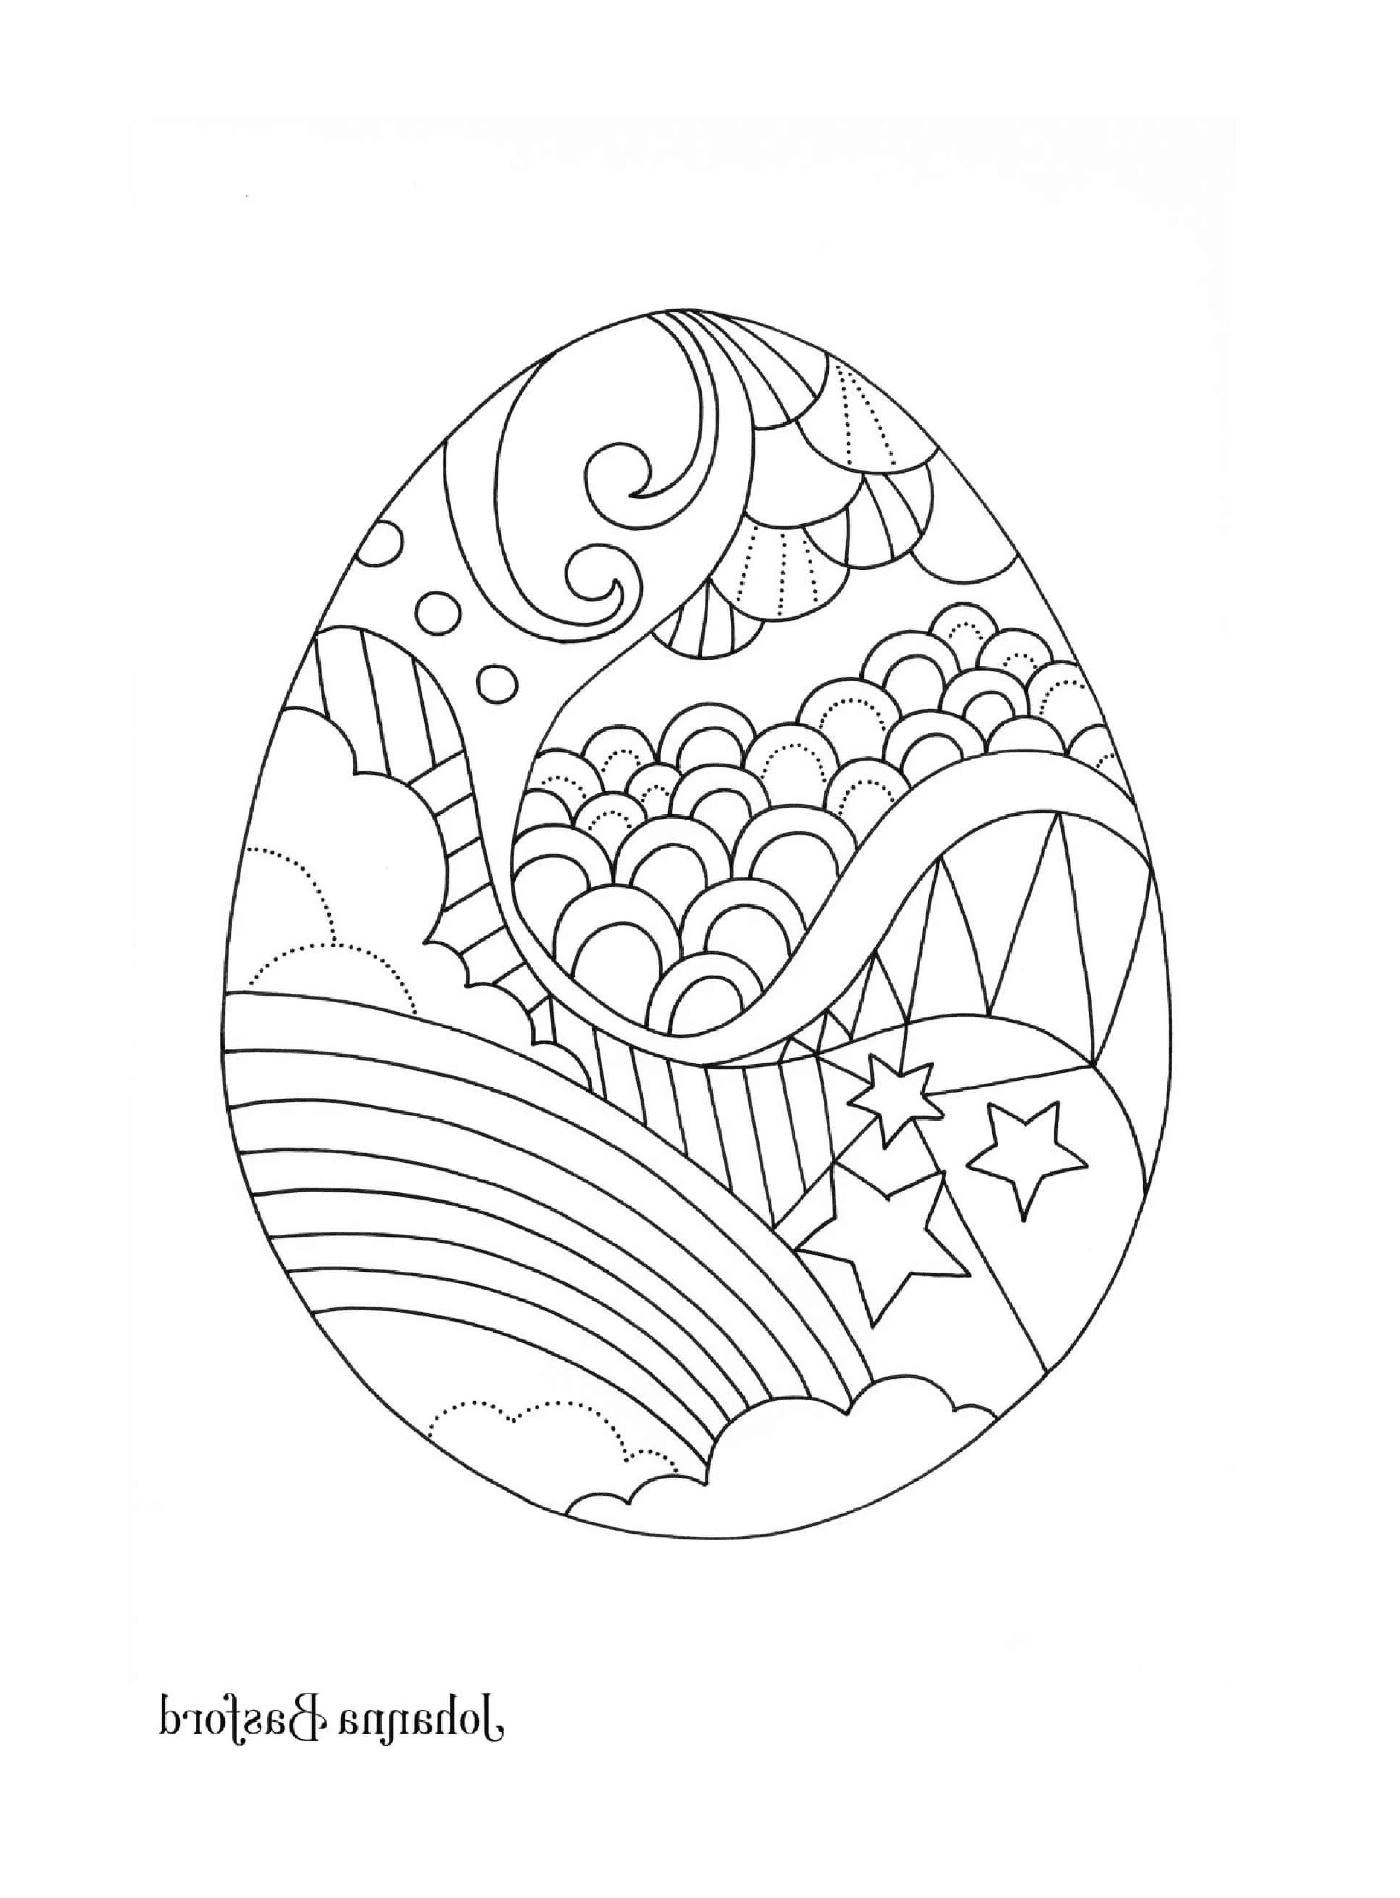  Um ovo de Páscoa decorado com um arco-íris, nuvens, estrelas e outros padrões 